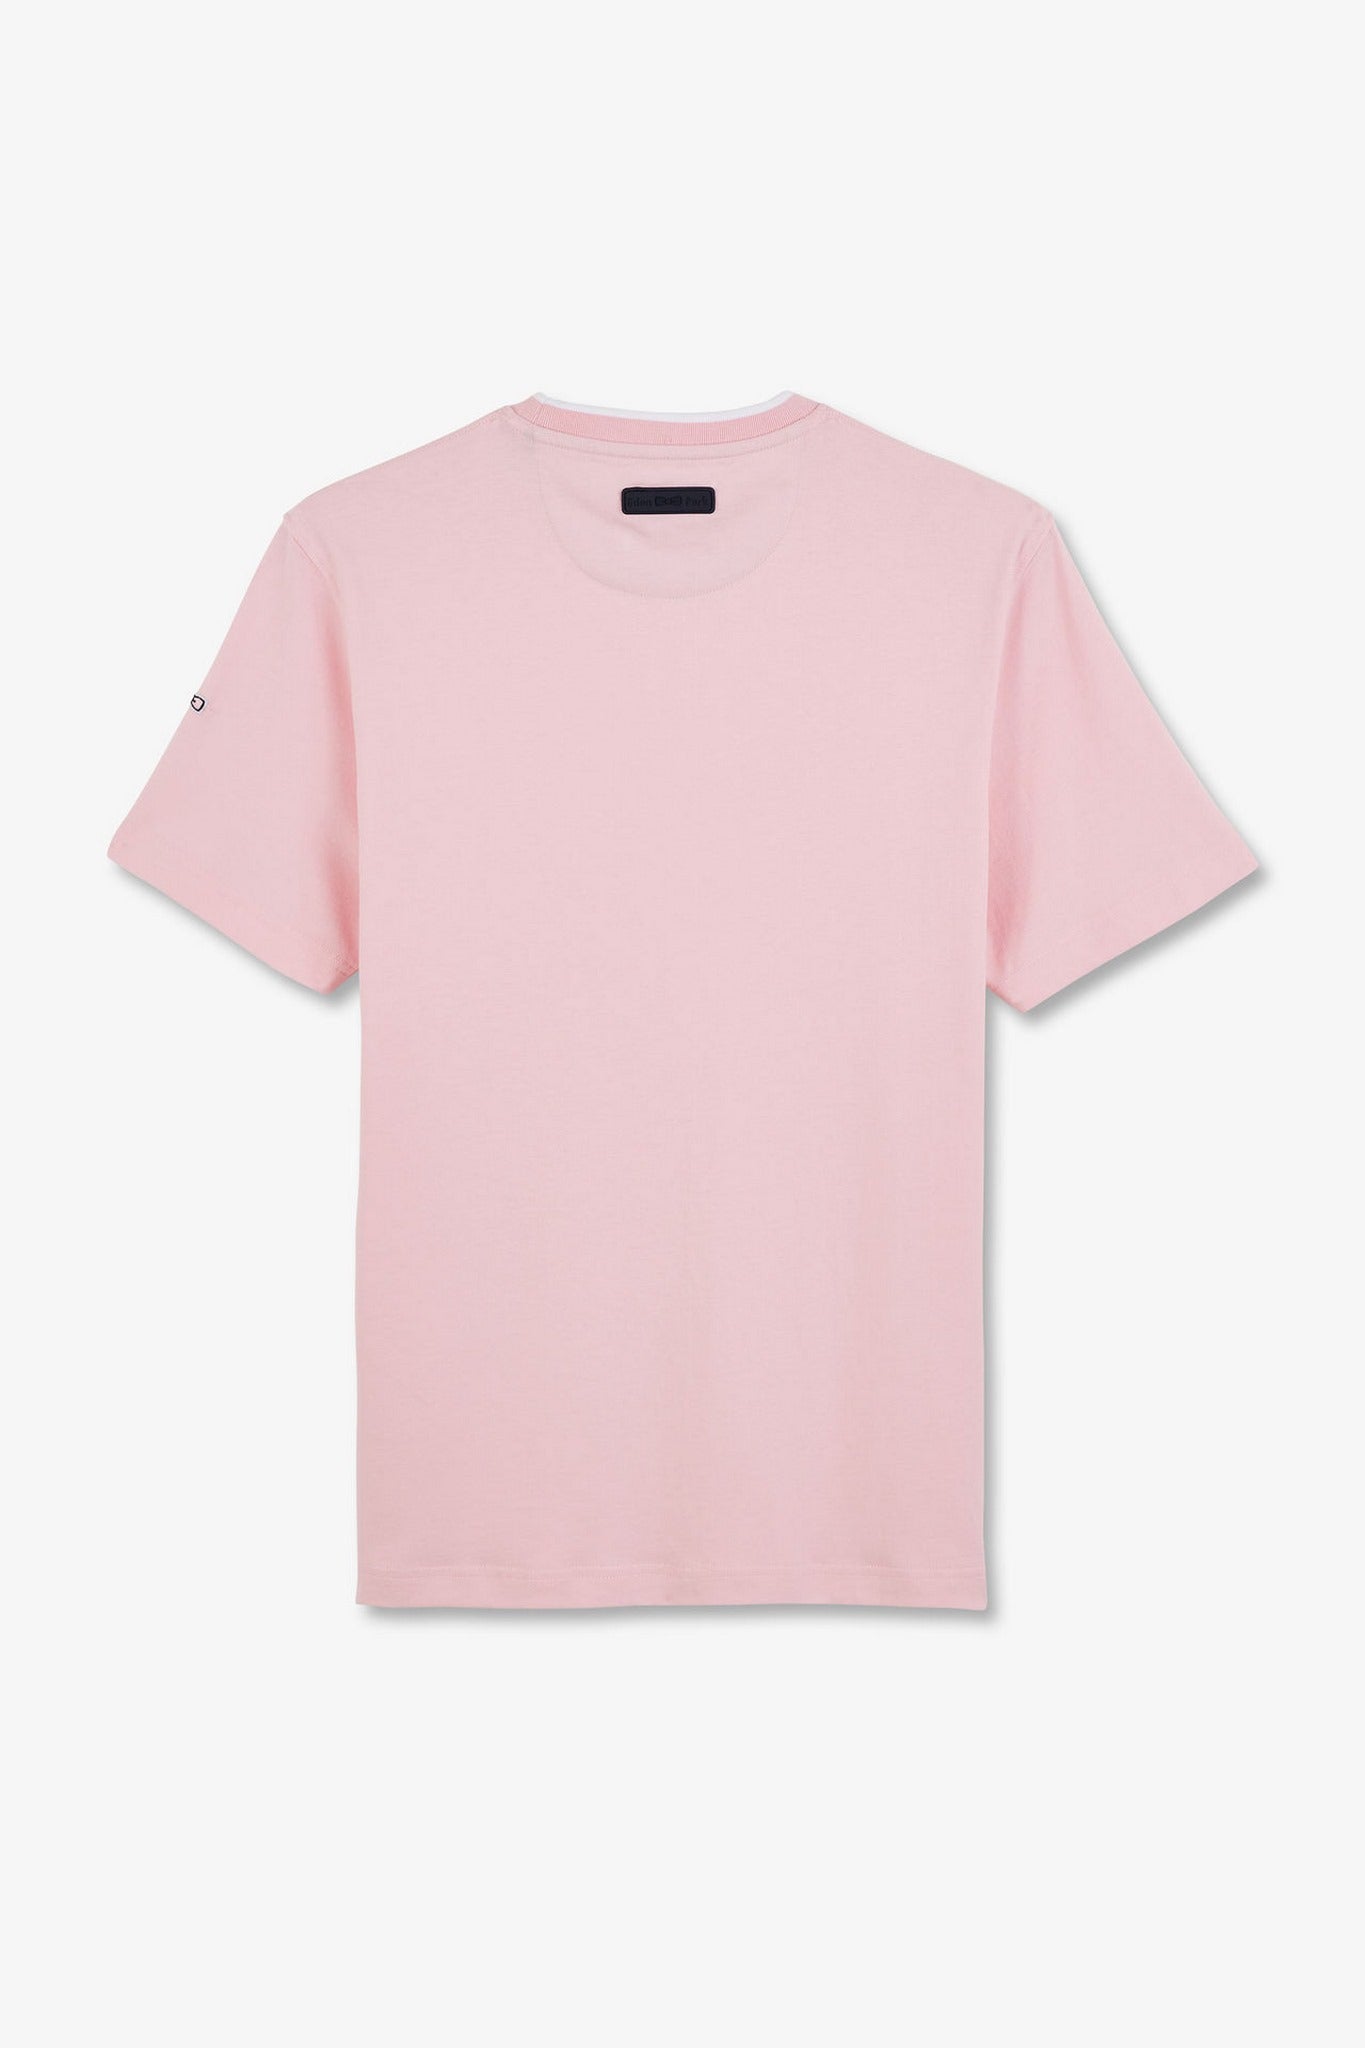 T-shirt rose uni à manches courtes - Image 4